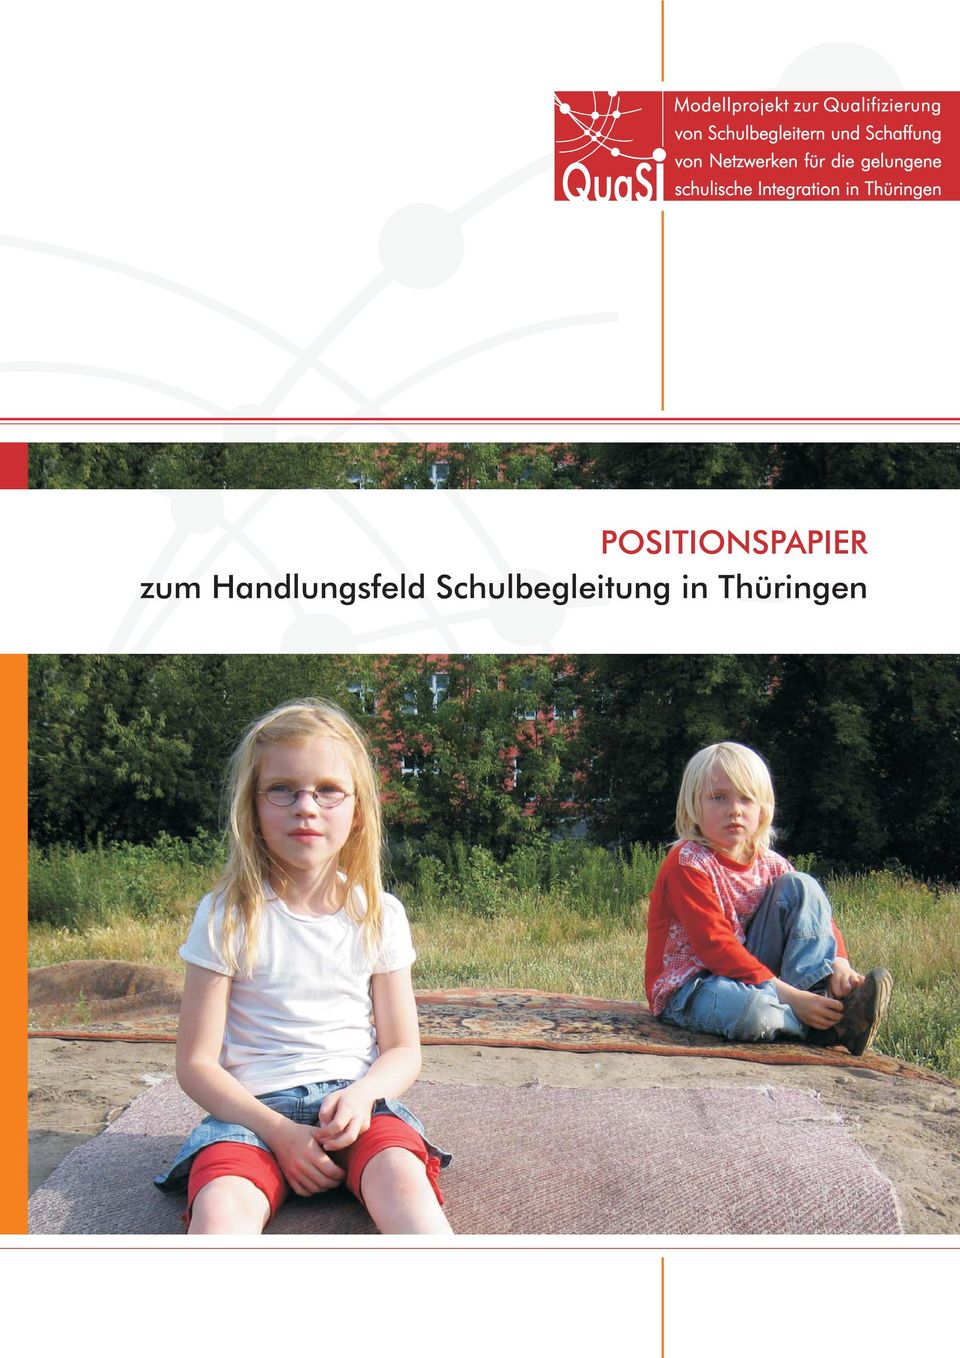 die gelungene schulische Integration in Thüringen